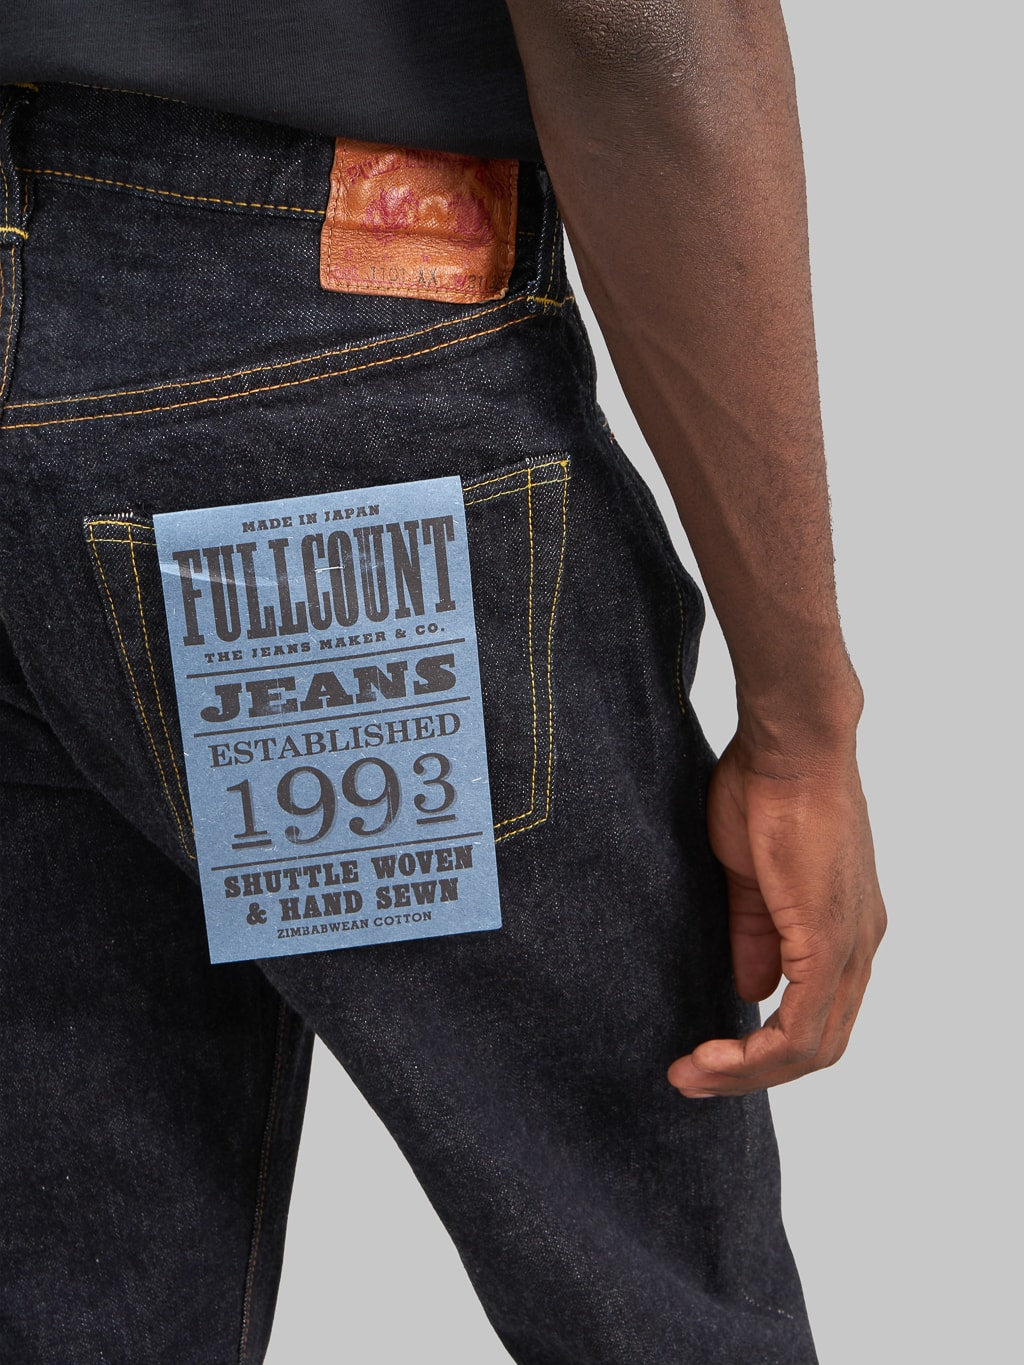 Fullcount 1101XXW regular Straight selvedge Jeans back pocket